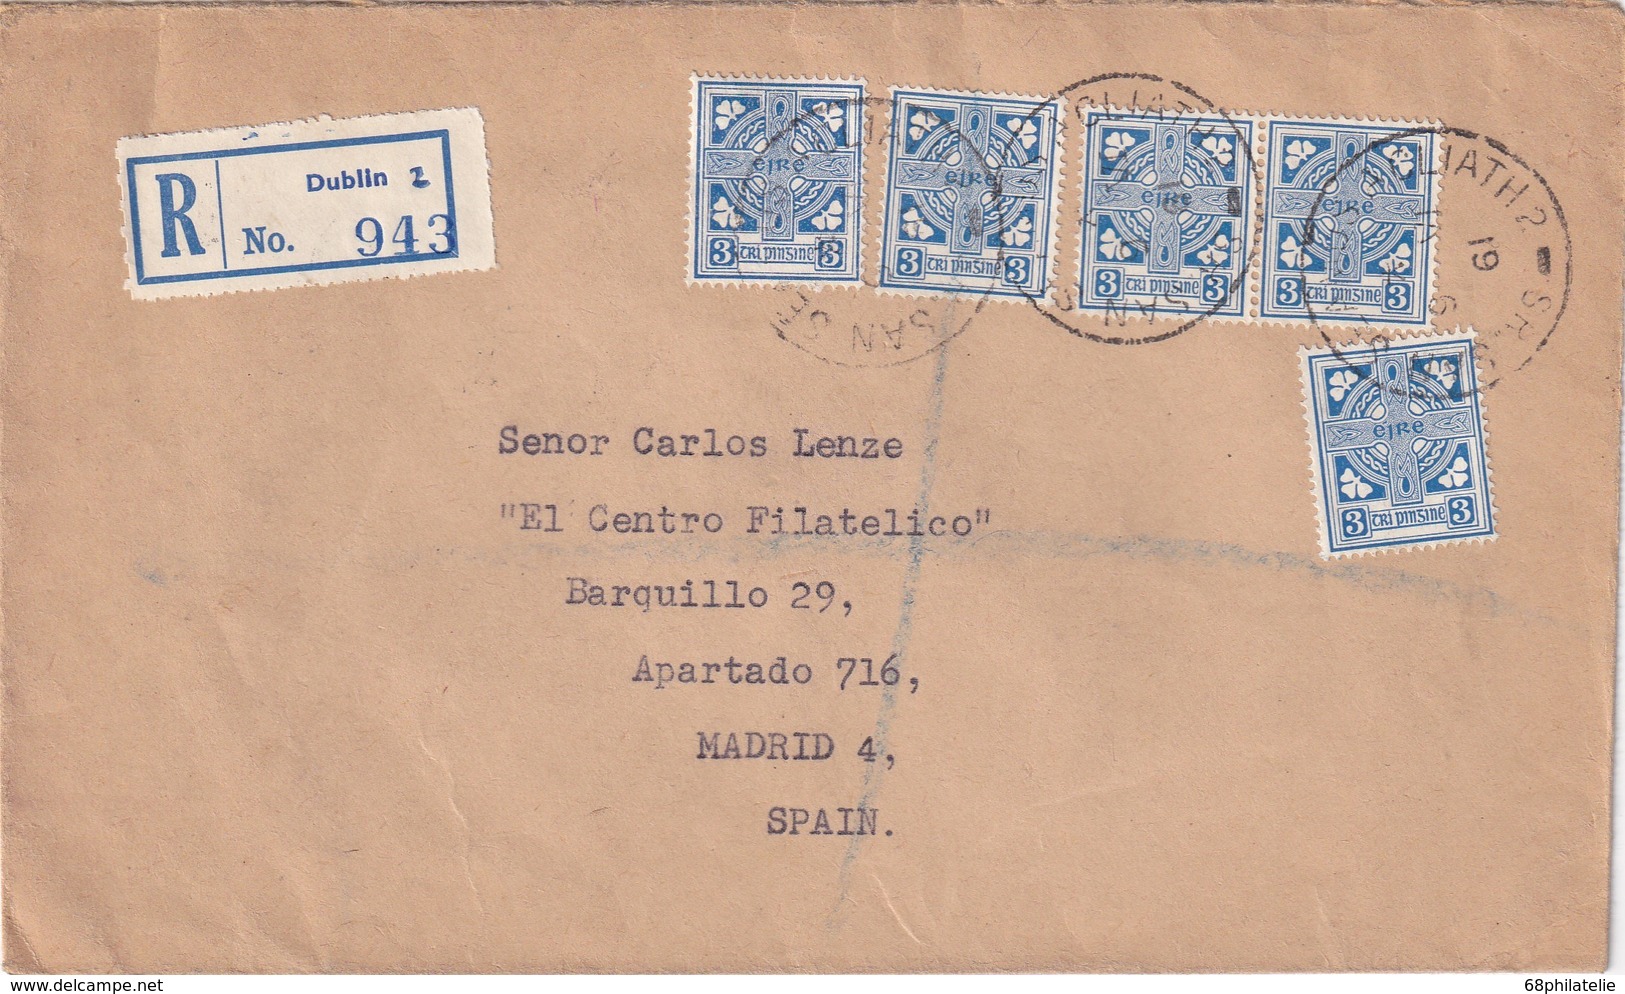 IRLANDE 1961 LETTRE RECOMMANDEE DE DUBLIN AVEC CACHET ARRIVEE MADRID - Lettres & Documents